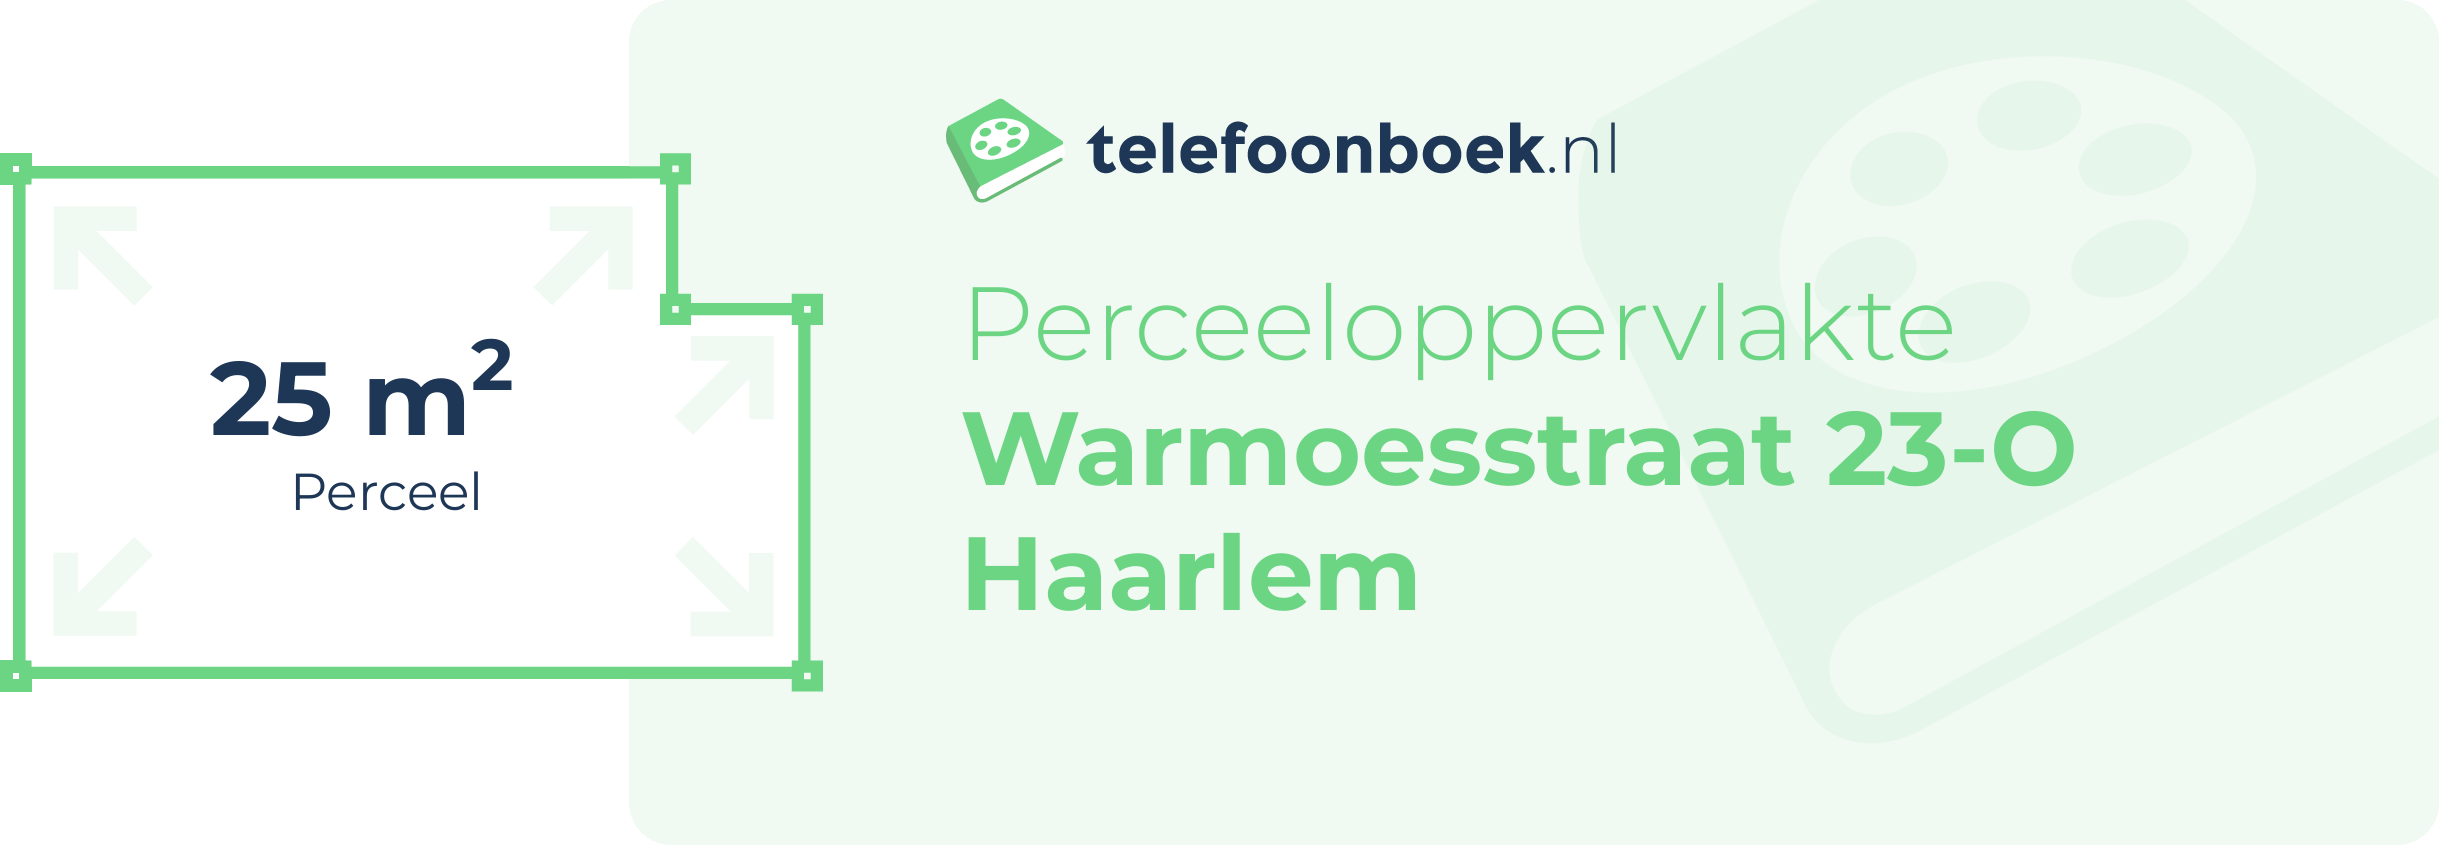 Perceeloppervlakte Warmoesstraat 23-O Haarlem